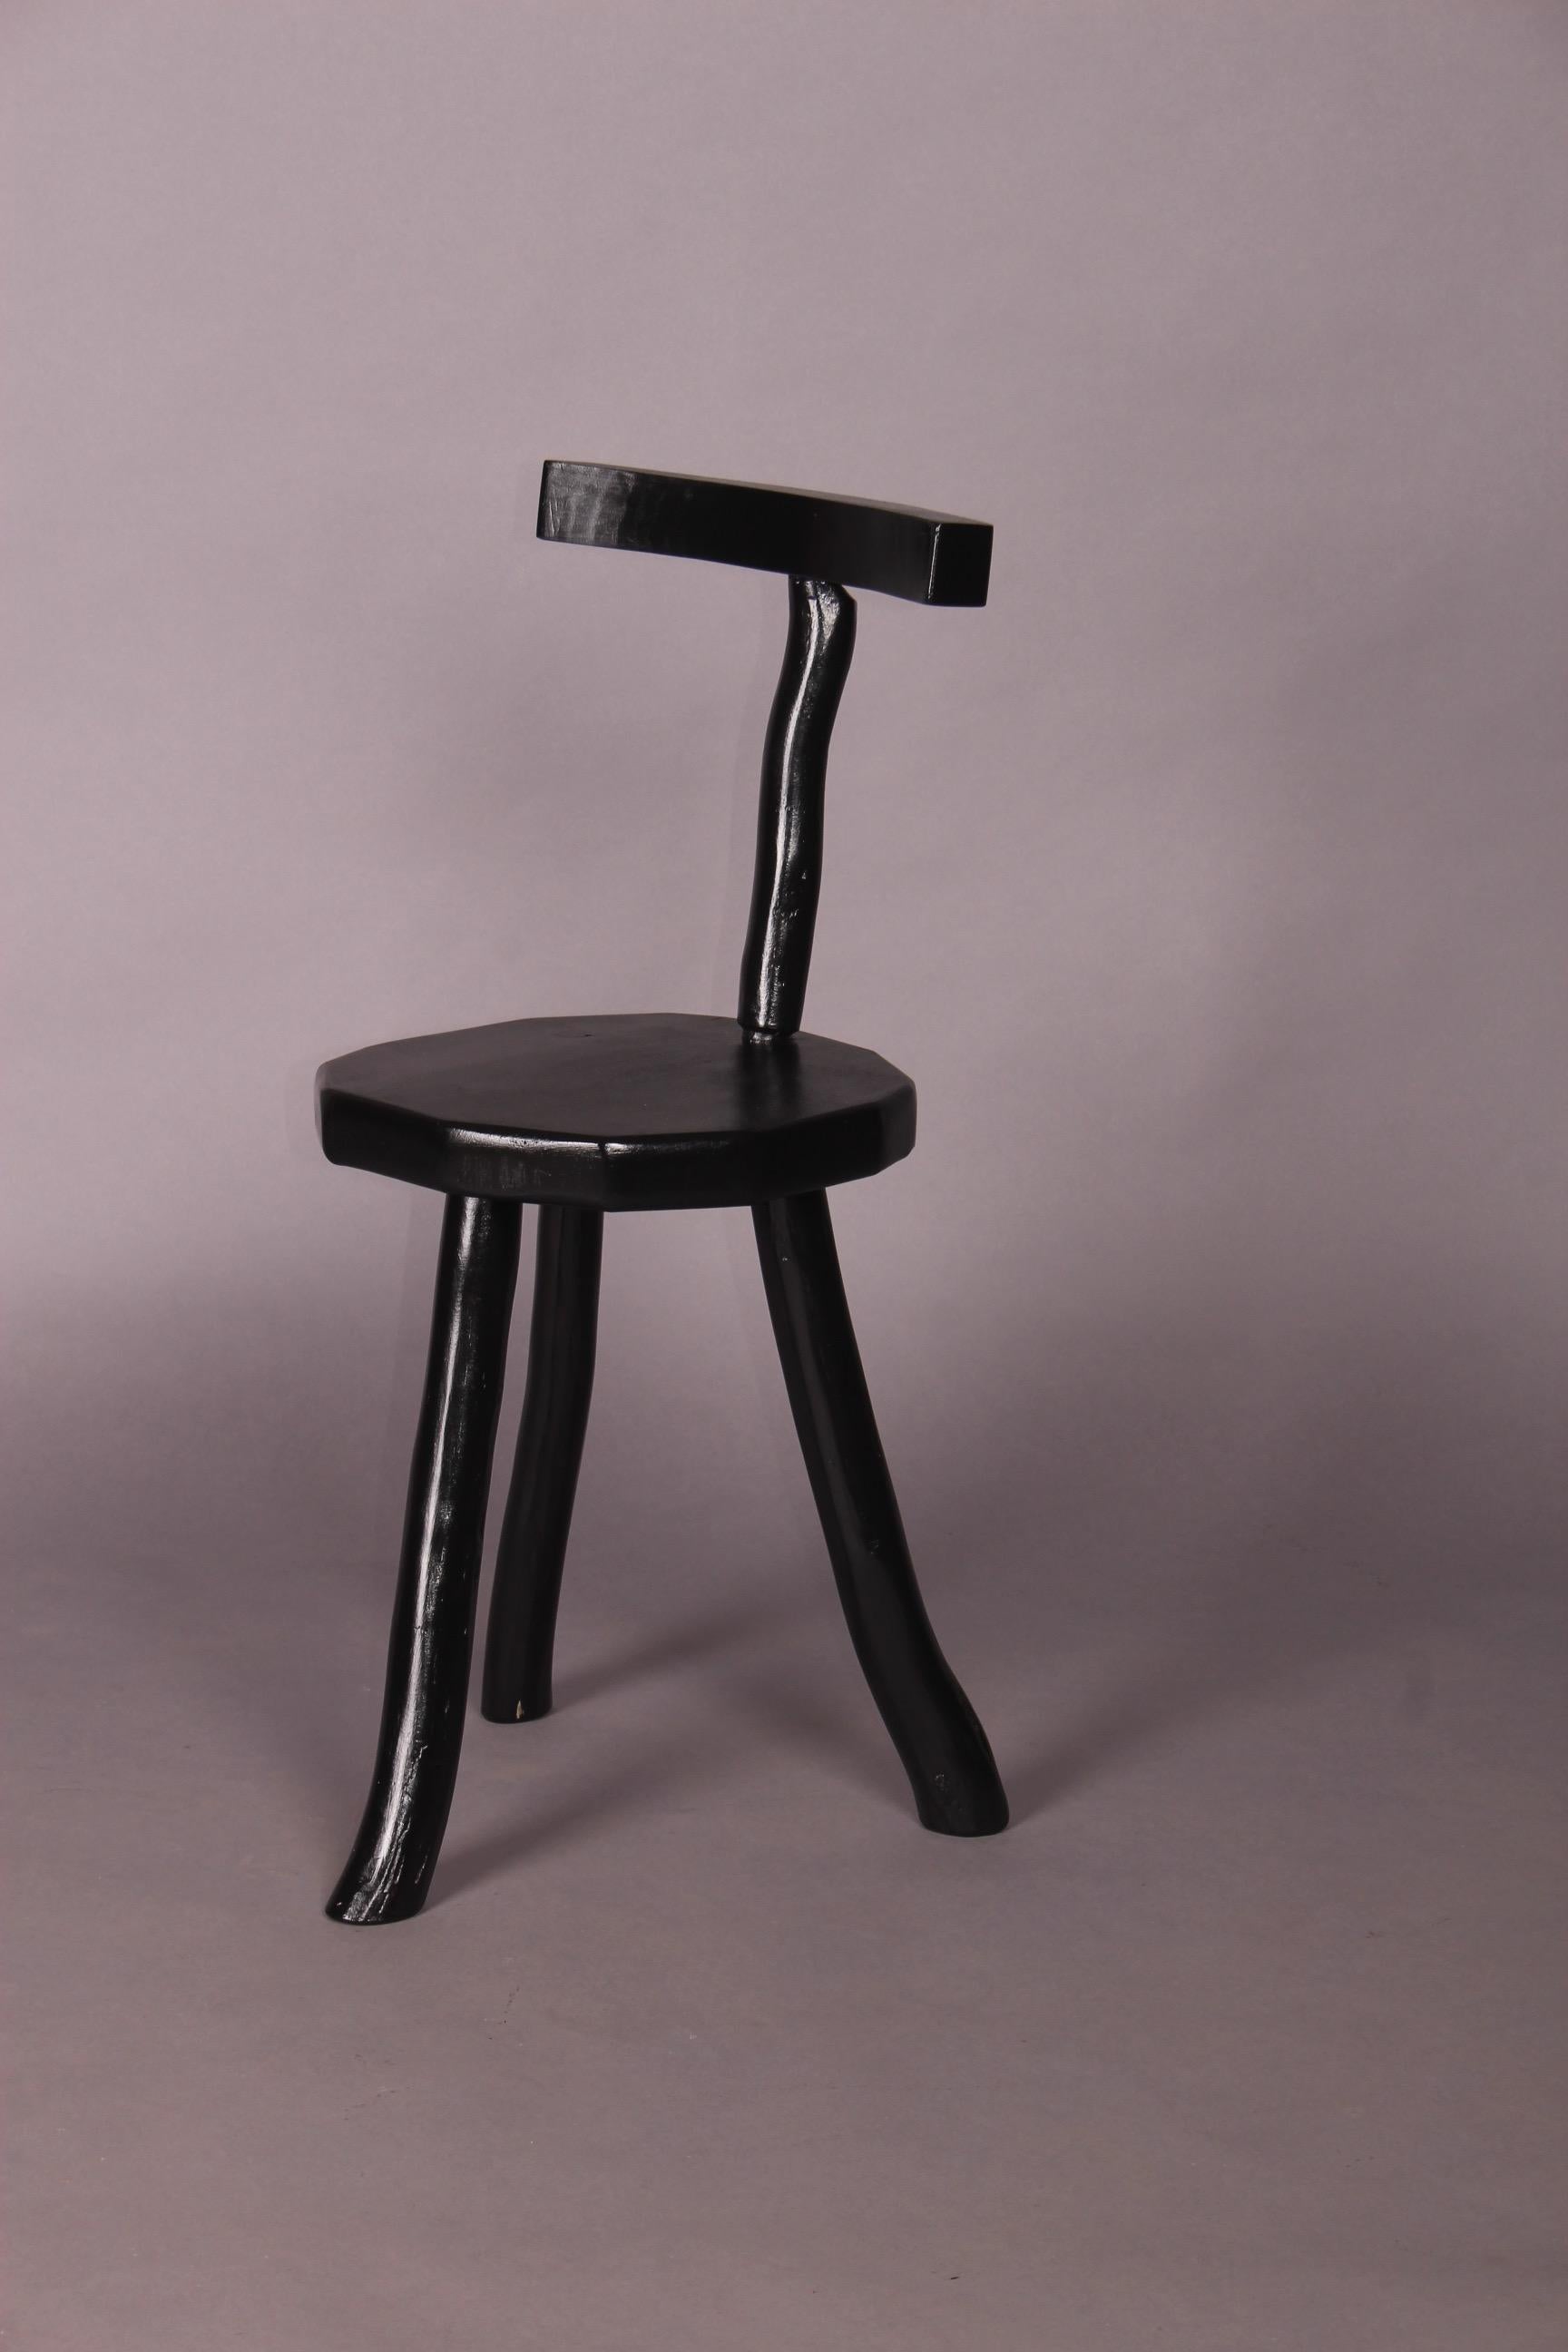 European Black Painted Chair